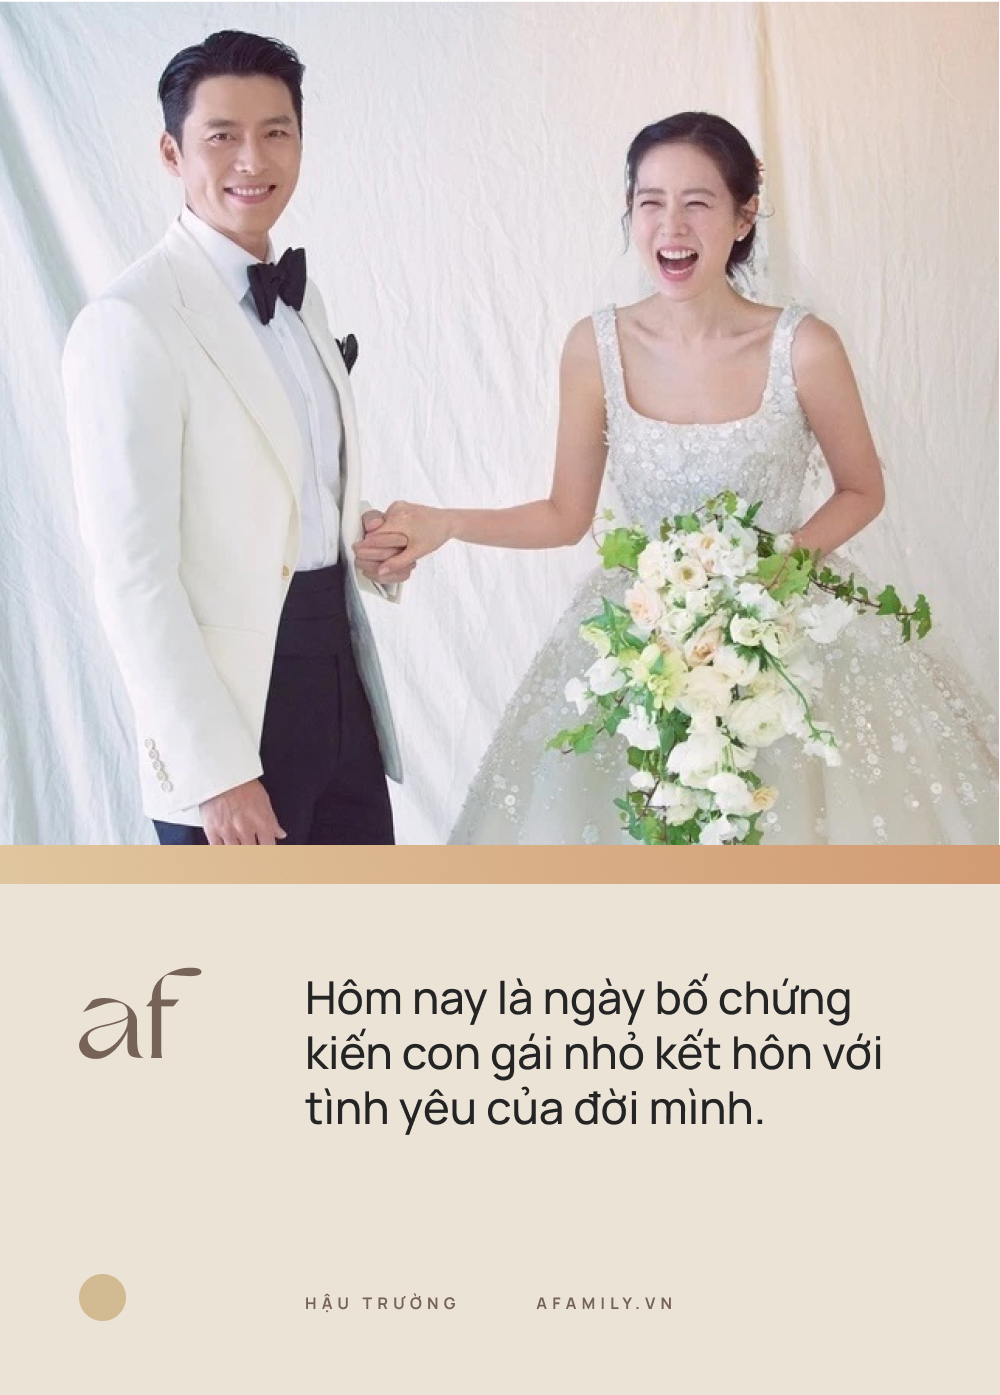 Sự thật lời nhắn nhủ giữa Hyun Bin và bố vợ trong đám cưới thế kỷ: Không có ngôn tình, tất cả chỉ là FAKE!-1